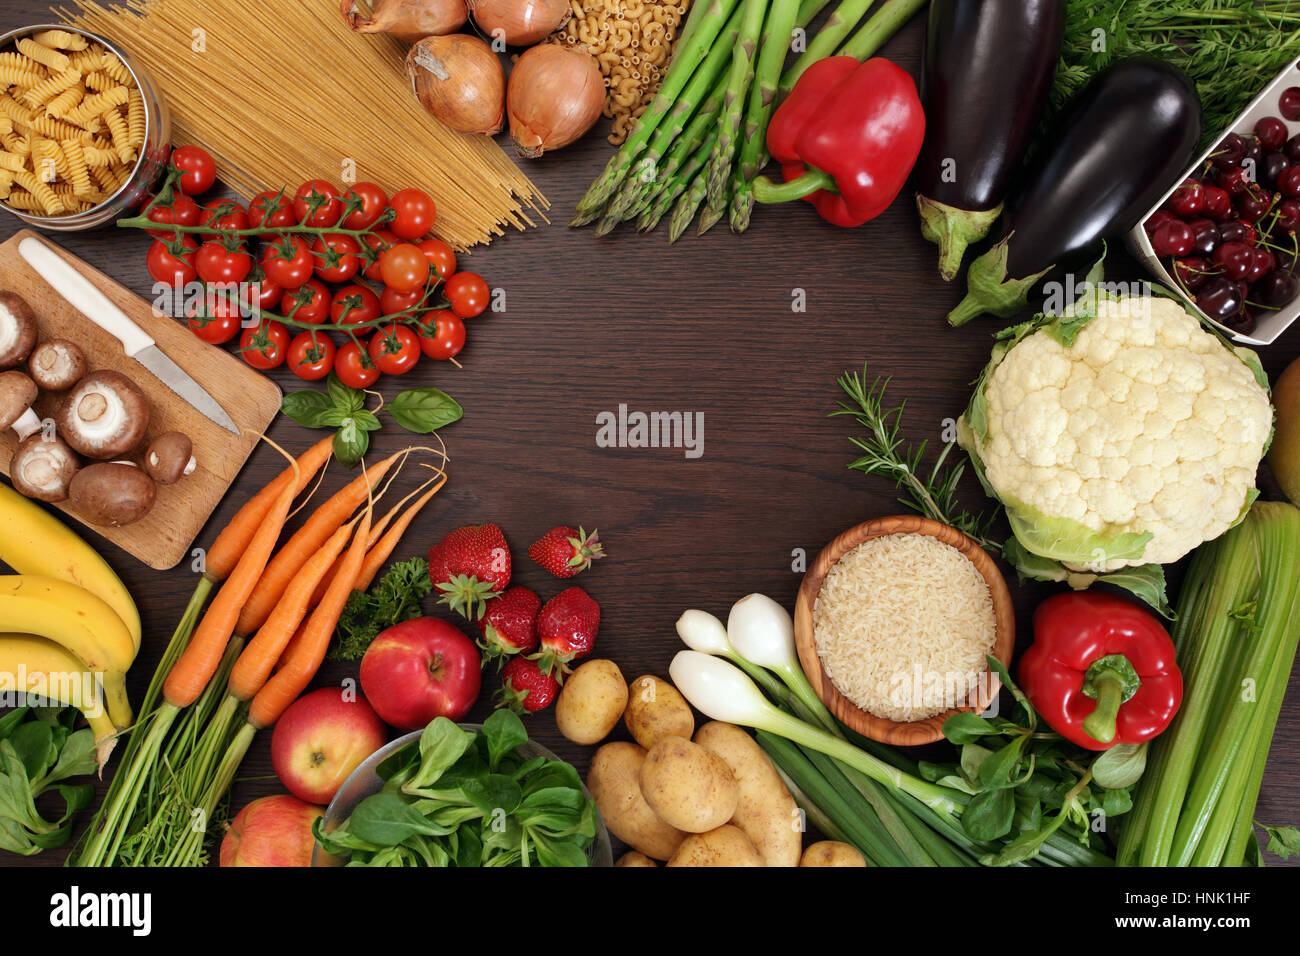 Photo d'une table pleine de légumes frais, des fruits et autres aliments sains avec un espace au milieu pour le texte. Banque D'Images